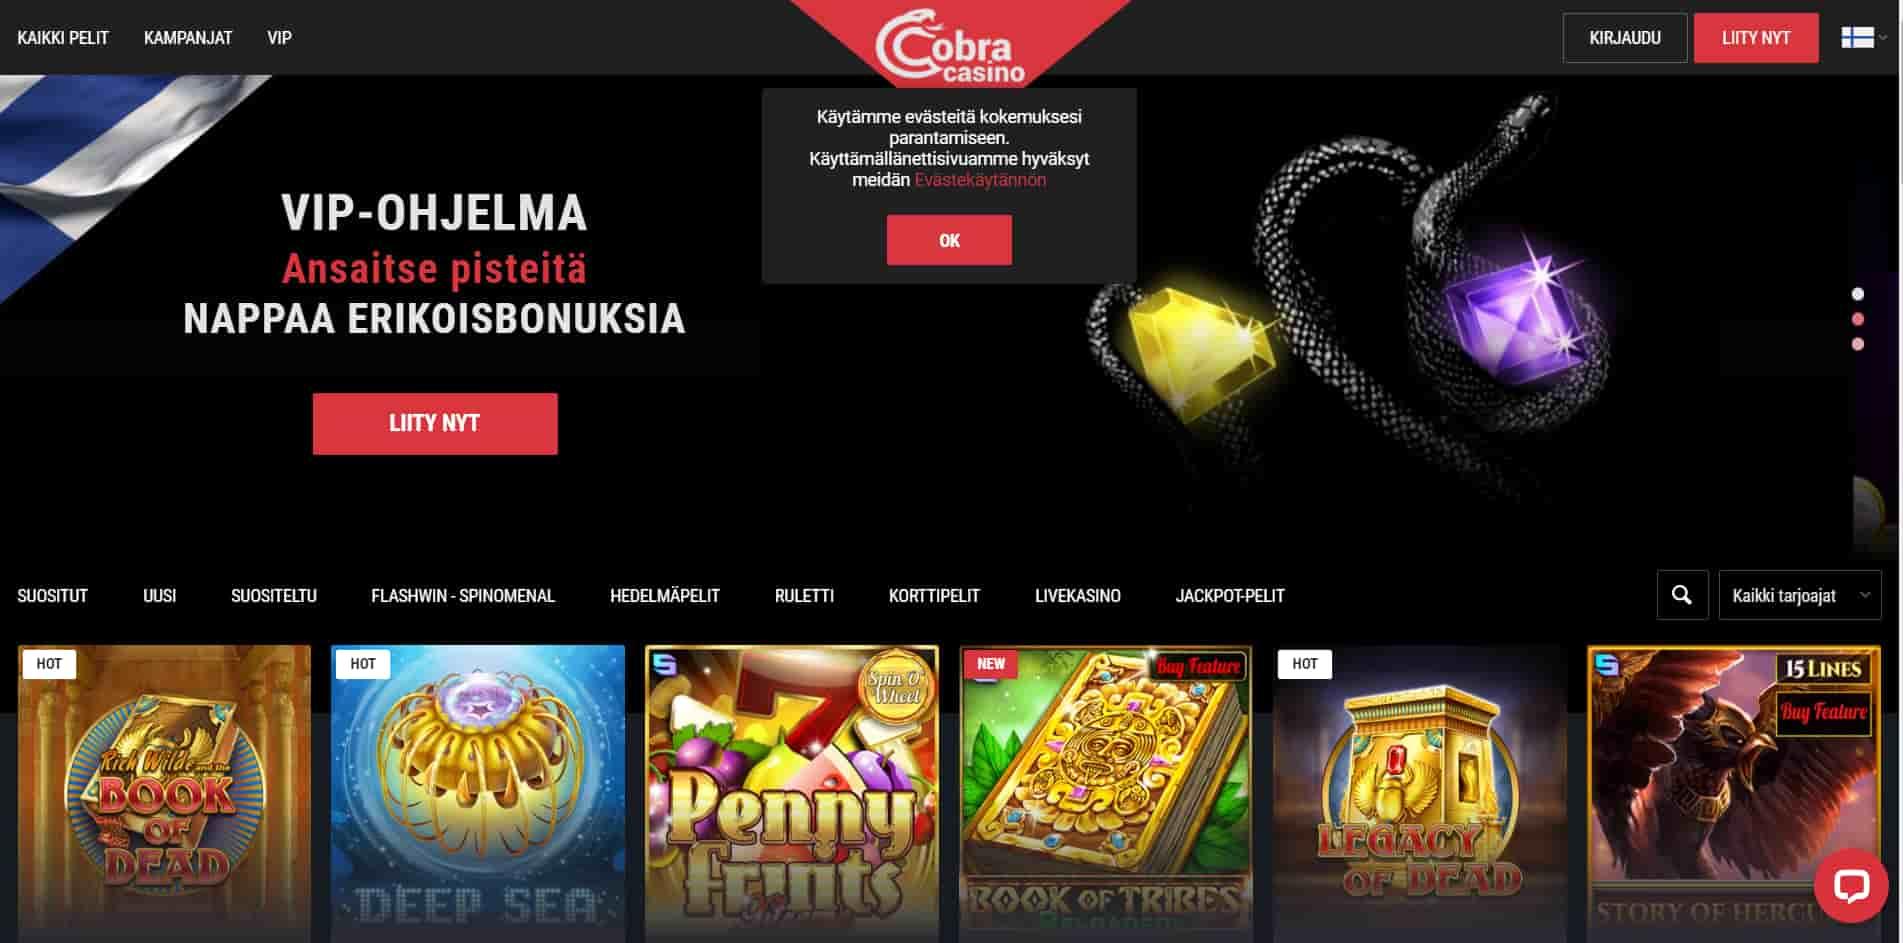 Cobra casino homepage